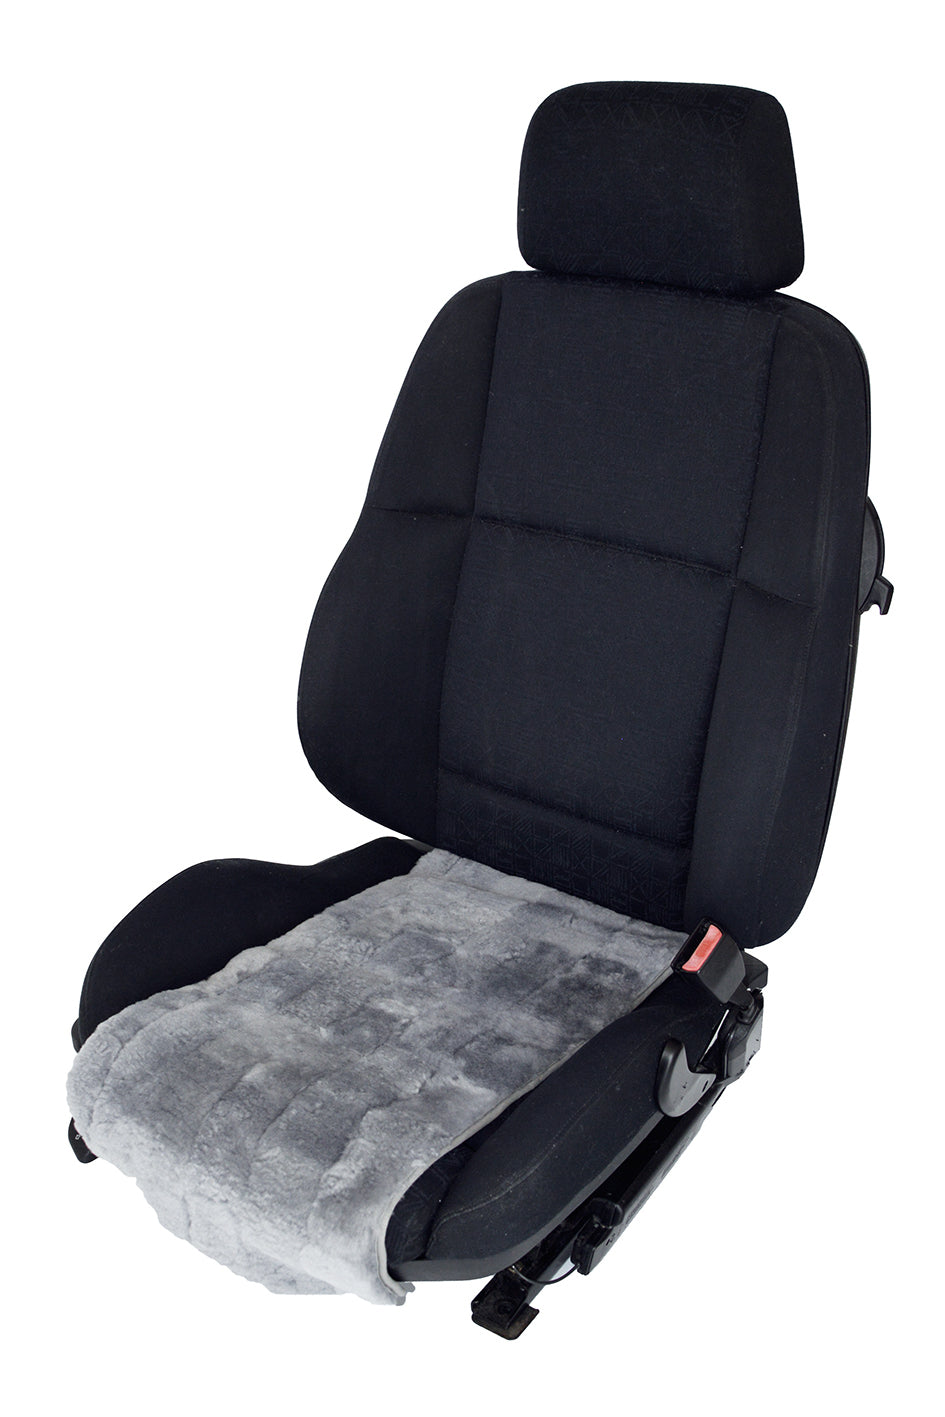 PAAR Auto Sitzbezug für Auto Weiß echte Schaffell Universal Cape Kopfstütze  Warme Sitzauflage für Autostuhl Wolle warme Mantelbezüge für Fahrzeug -  .de